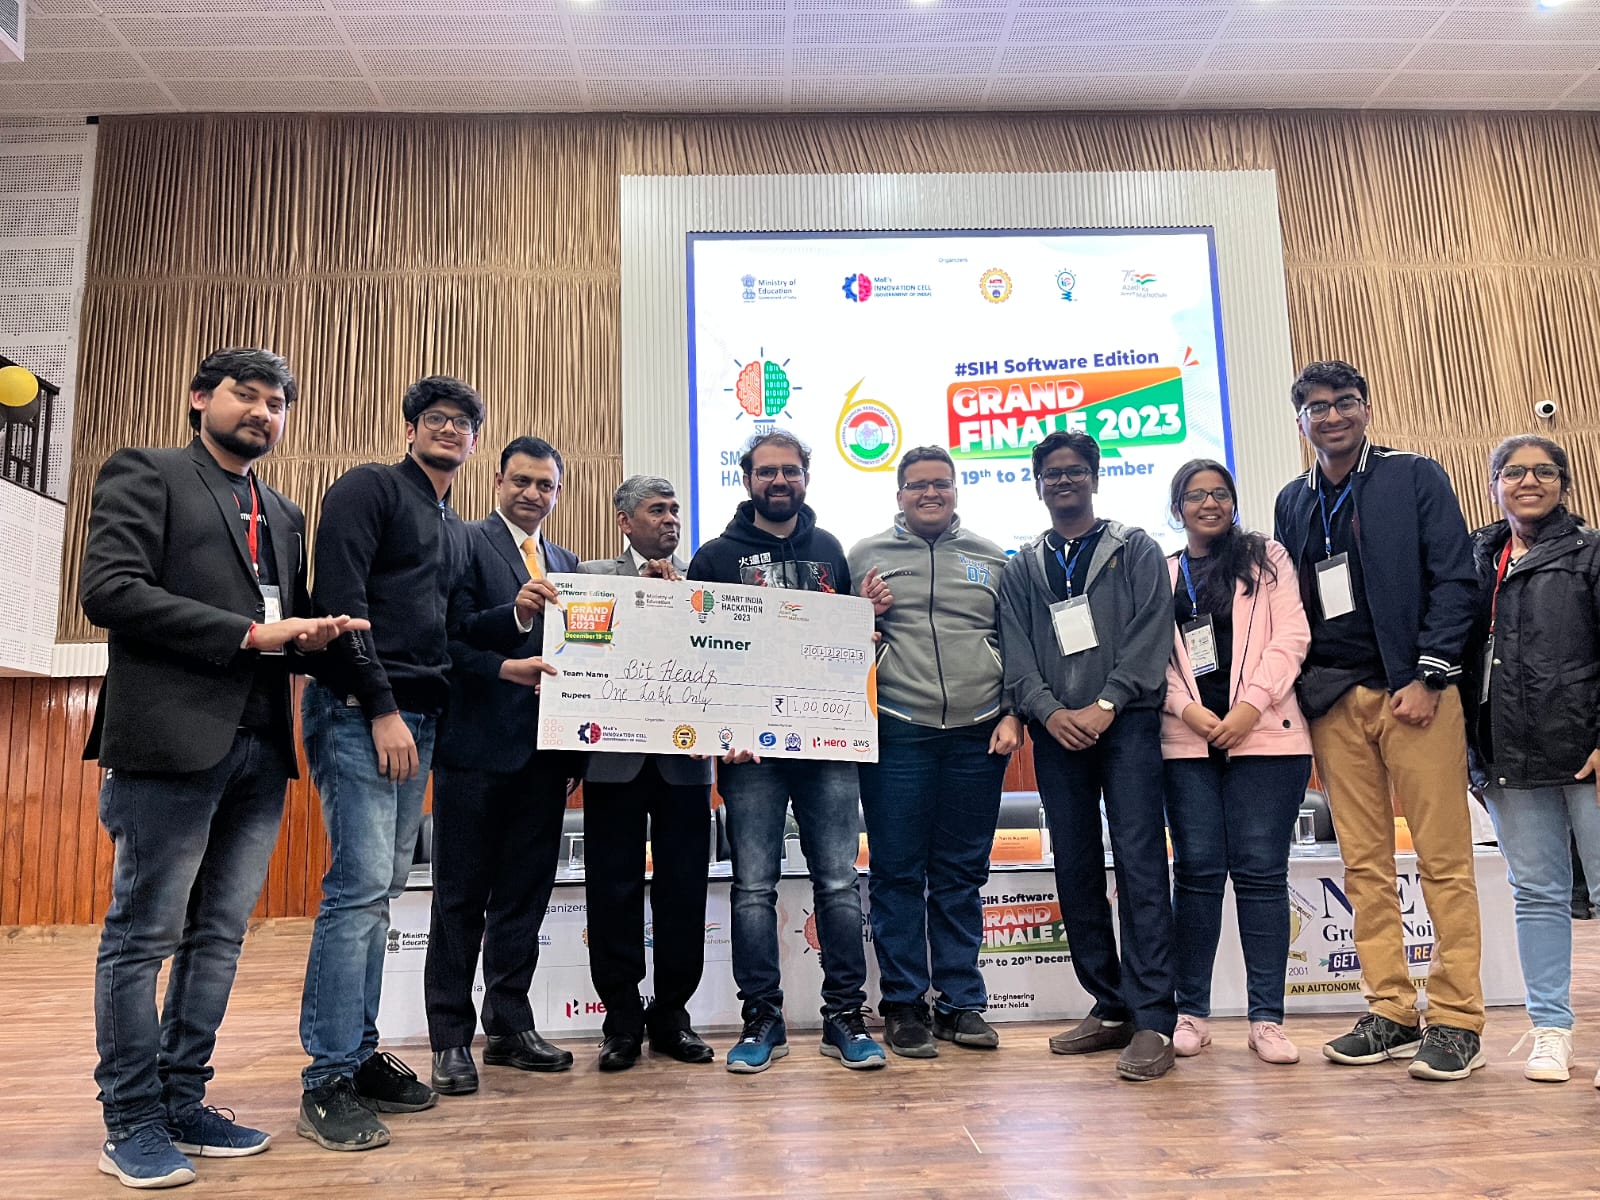 एनआईईटी ग्रेटर नॉएडा में दो दिवसीय स्मार्ट इण्डिया हैकथॉन - 2023 के सॉफ्टवेयर एडिशन के ग्रांड फ़िनाले का समापन: प्रतिभागियों में दिखा गजब का उत्साह